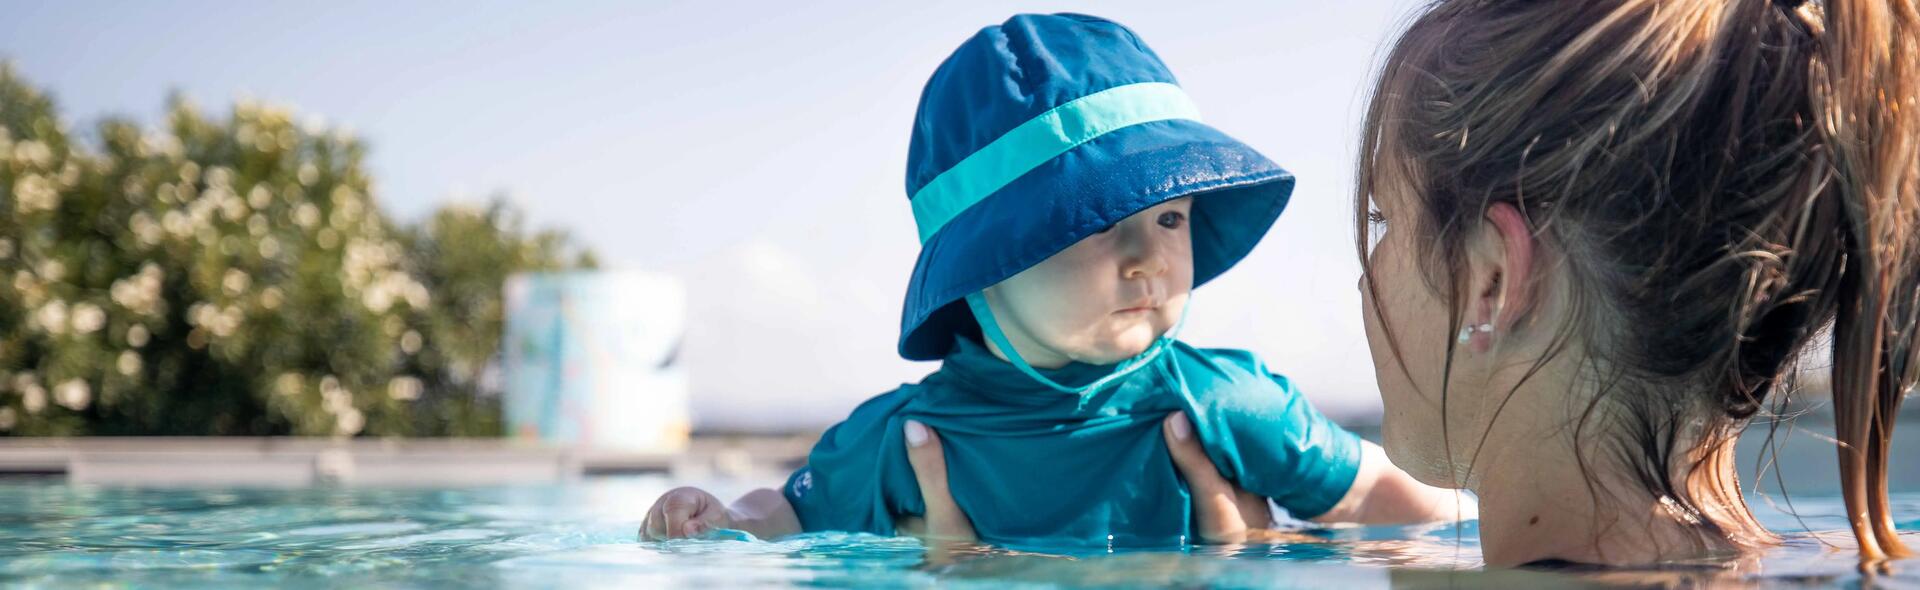 bébé dans une piscine avec sa maman